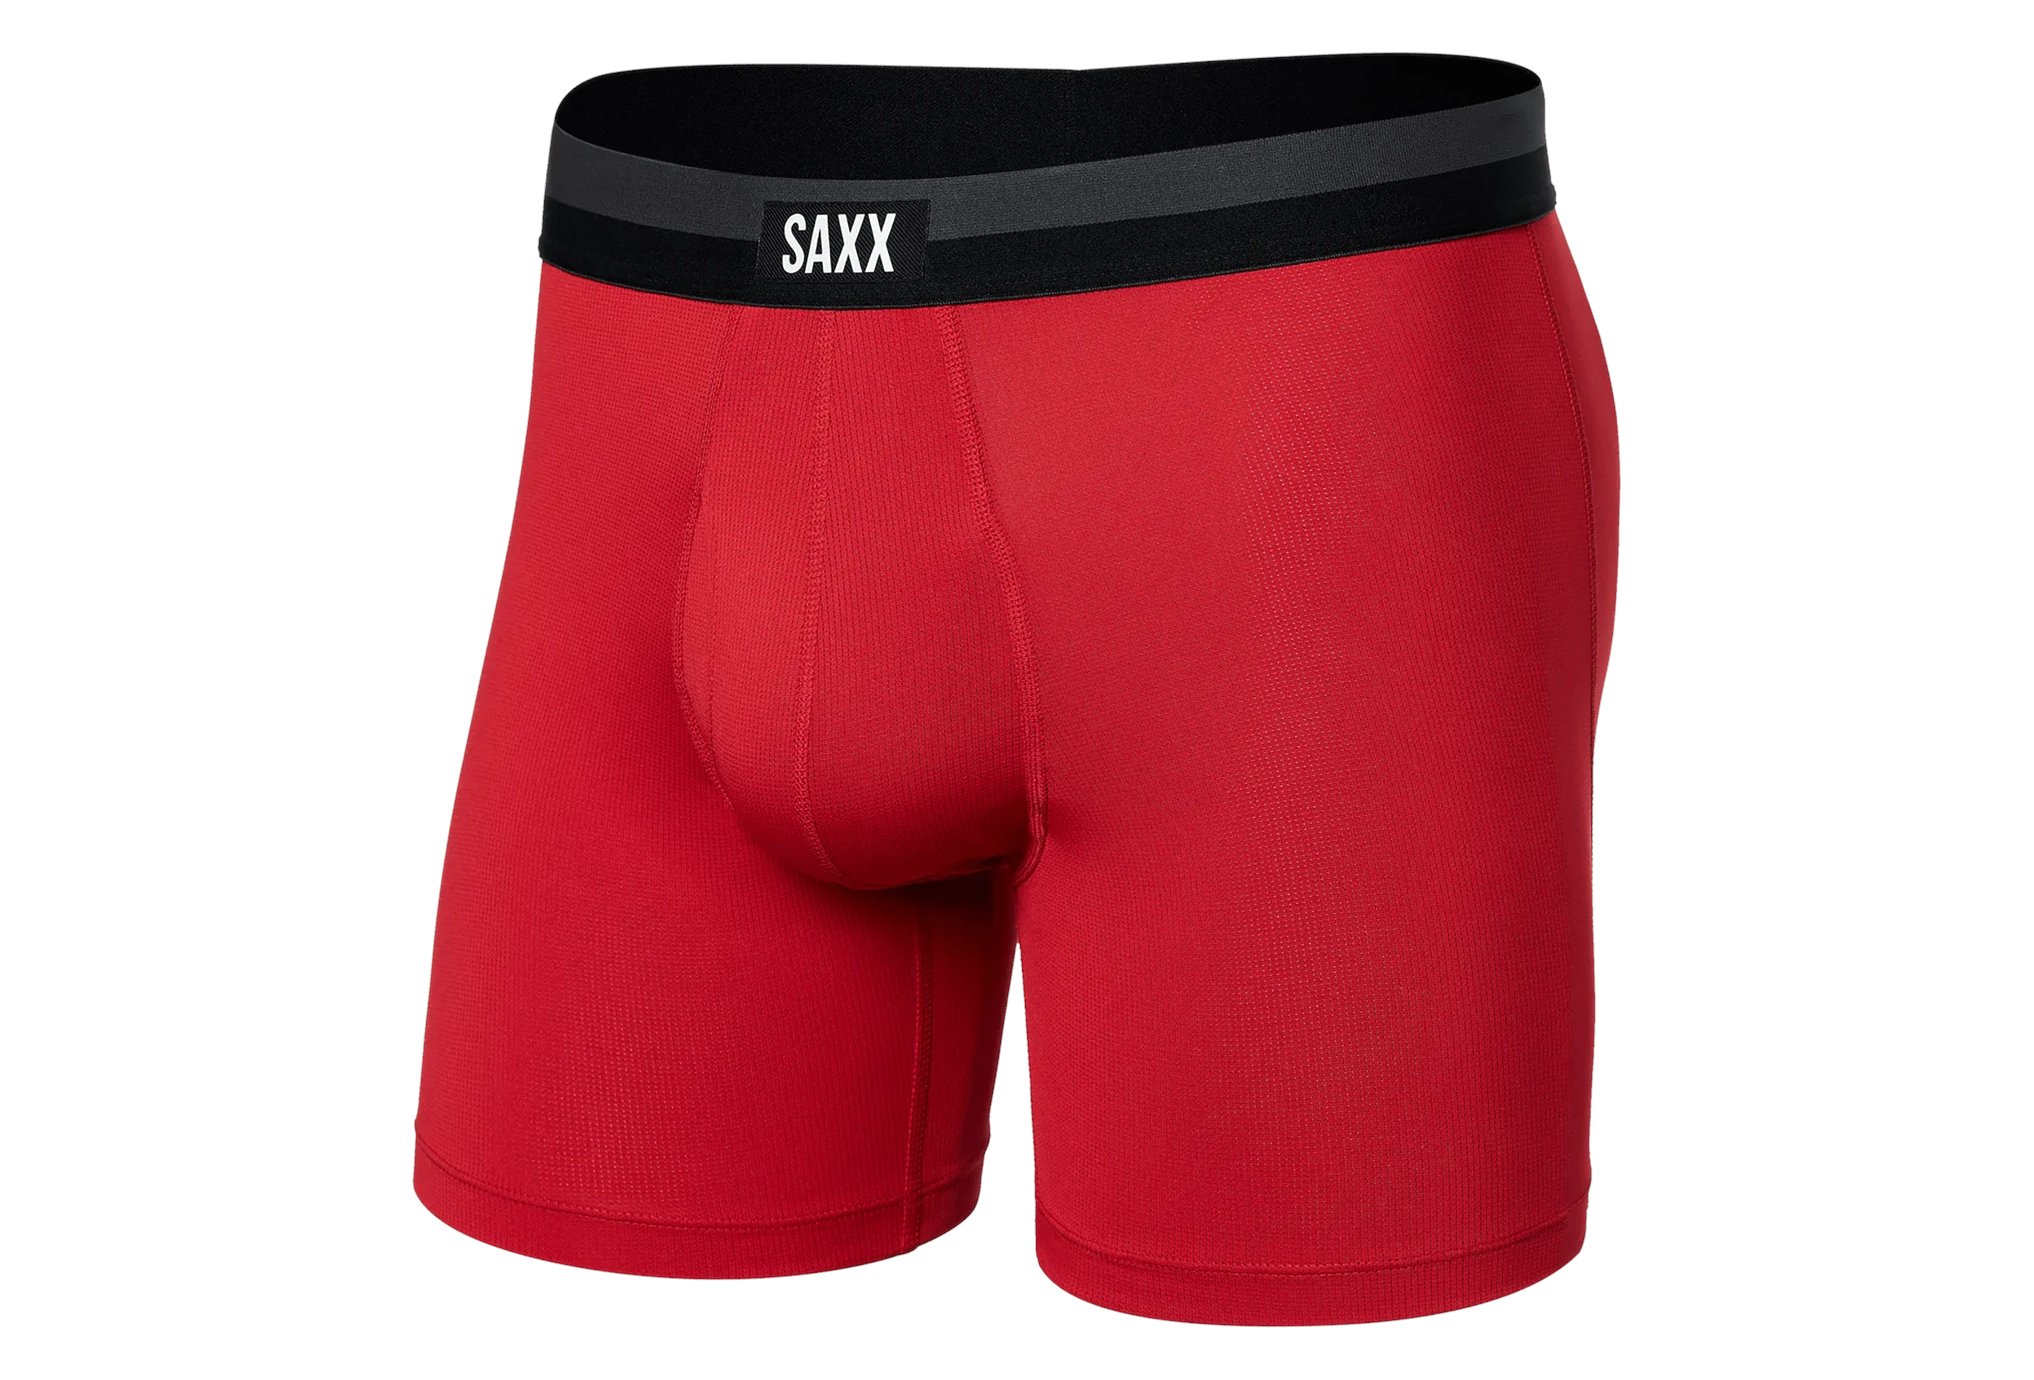 Saxx Sport Mesh M vêtement running homme